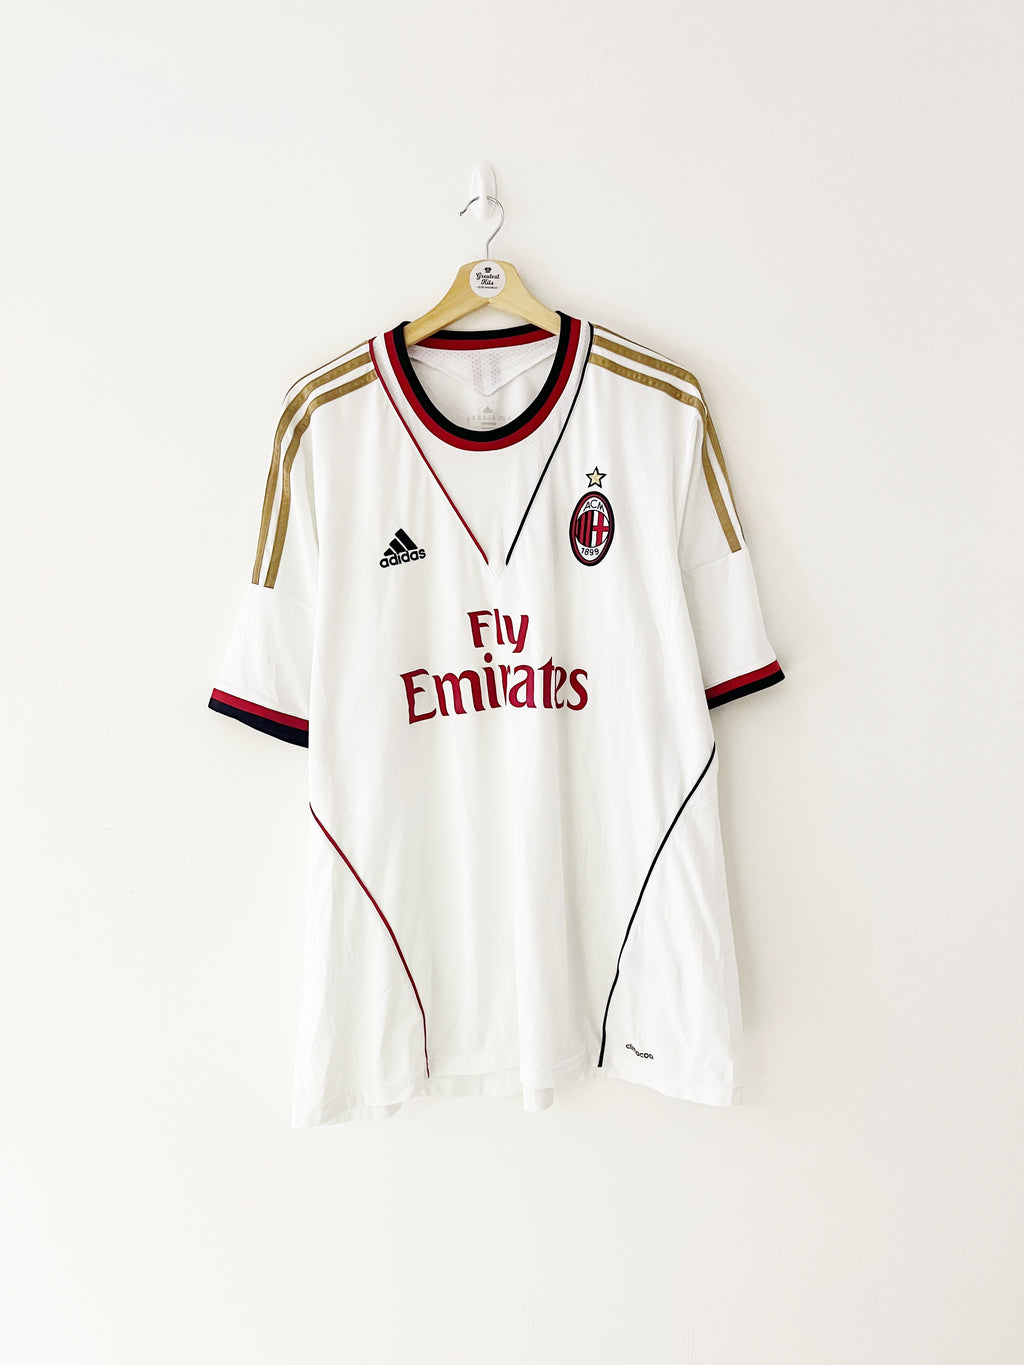 2013/14 AC Milan Away Shirt (XXL) 9/10